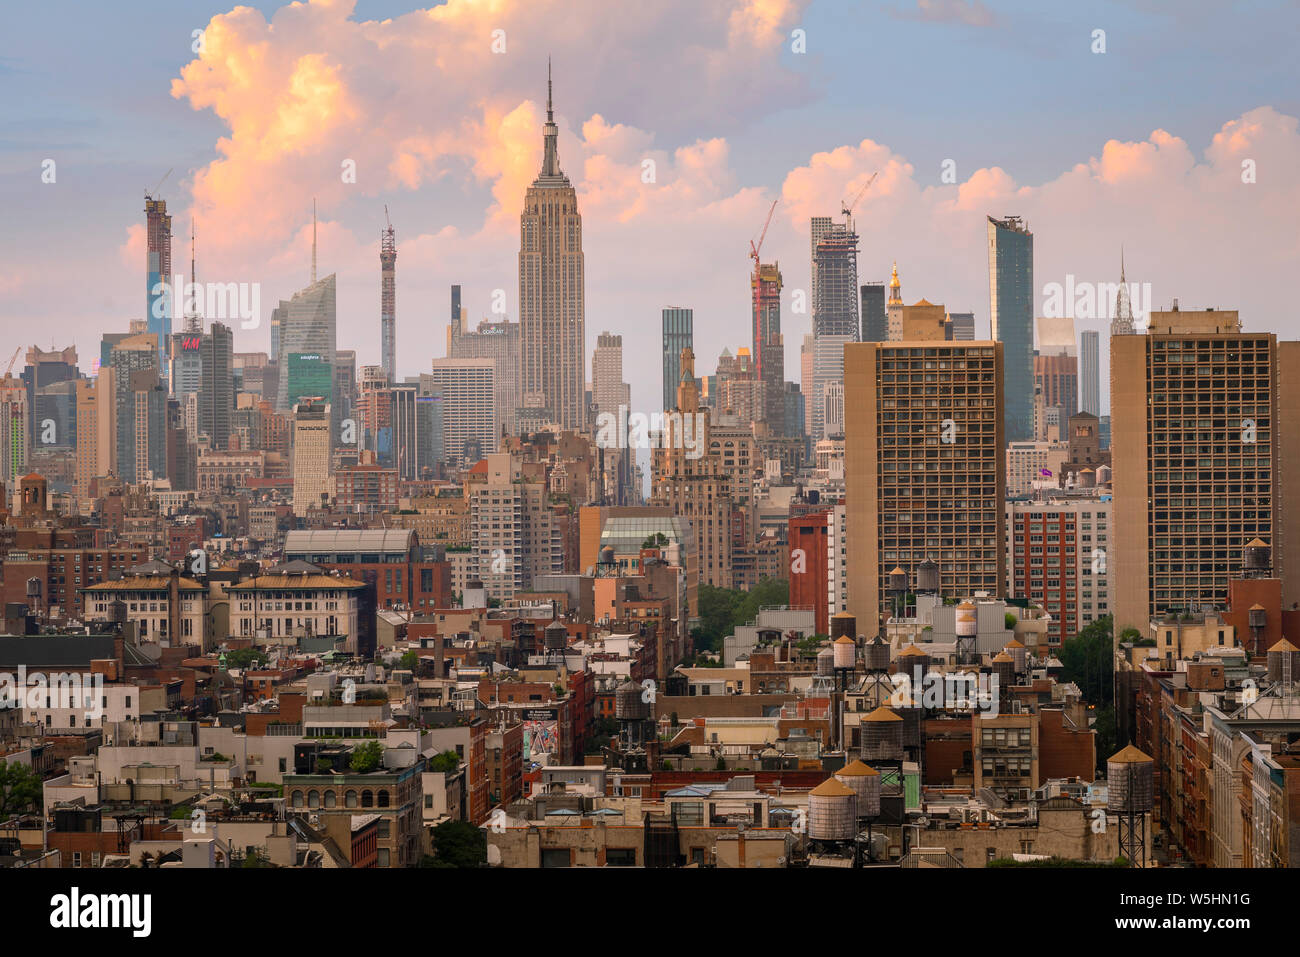 La città di New York, vista dal Tribeca attraverso aree del centro cittadino di Soho, il West Village e Chelsea verso lo skyline del centro cittadino di Manhattan, New York, Stati Uniti d'America. Foto Stock